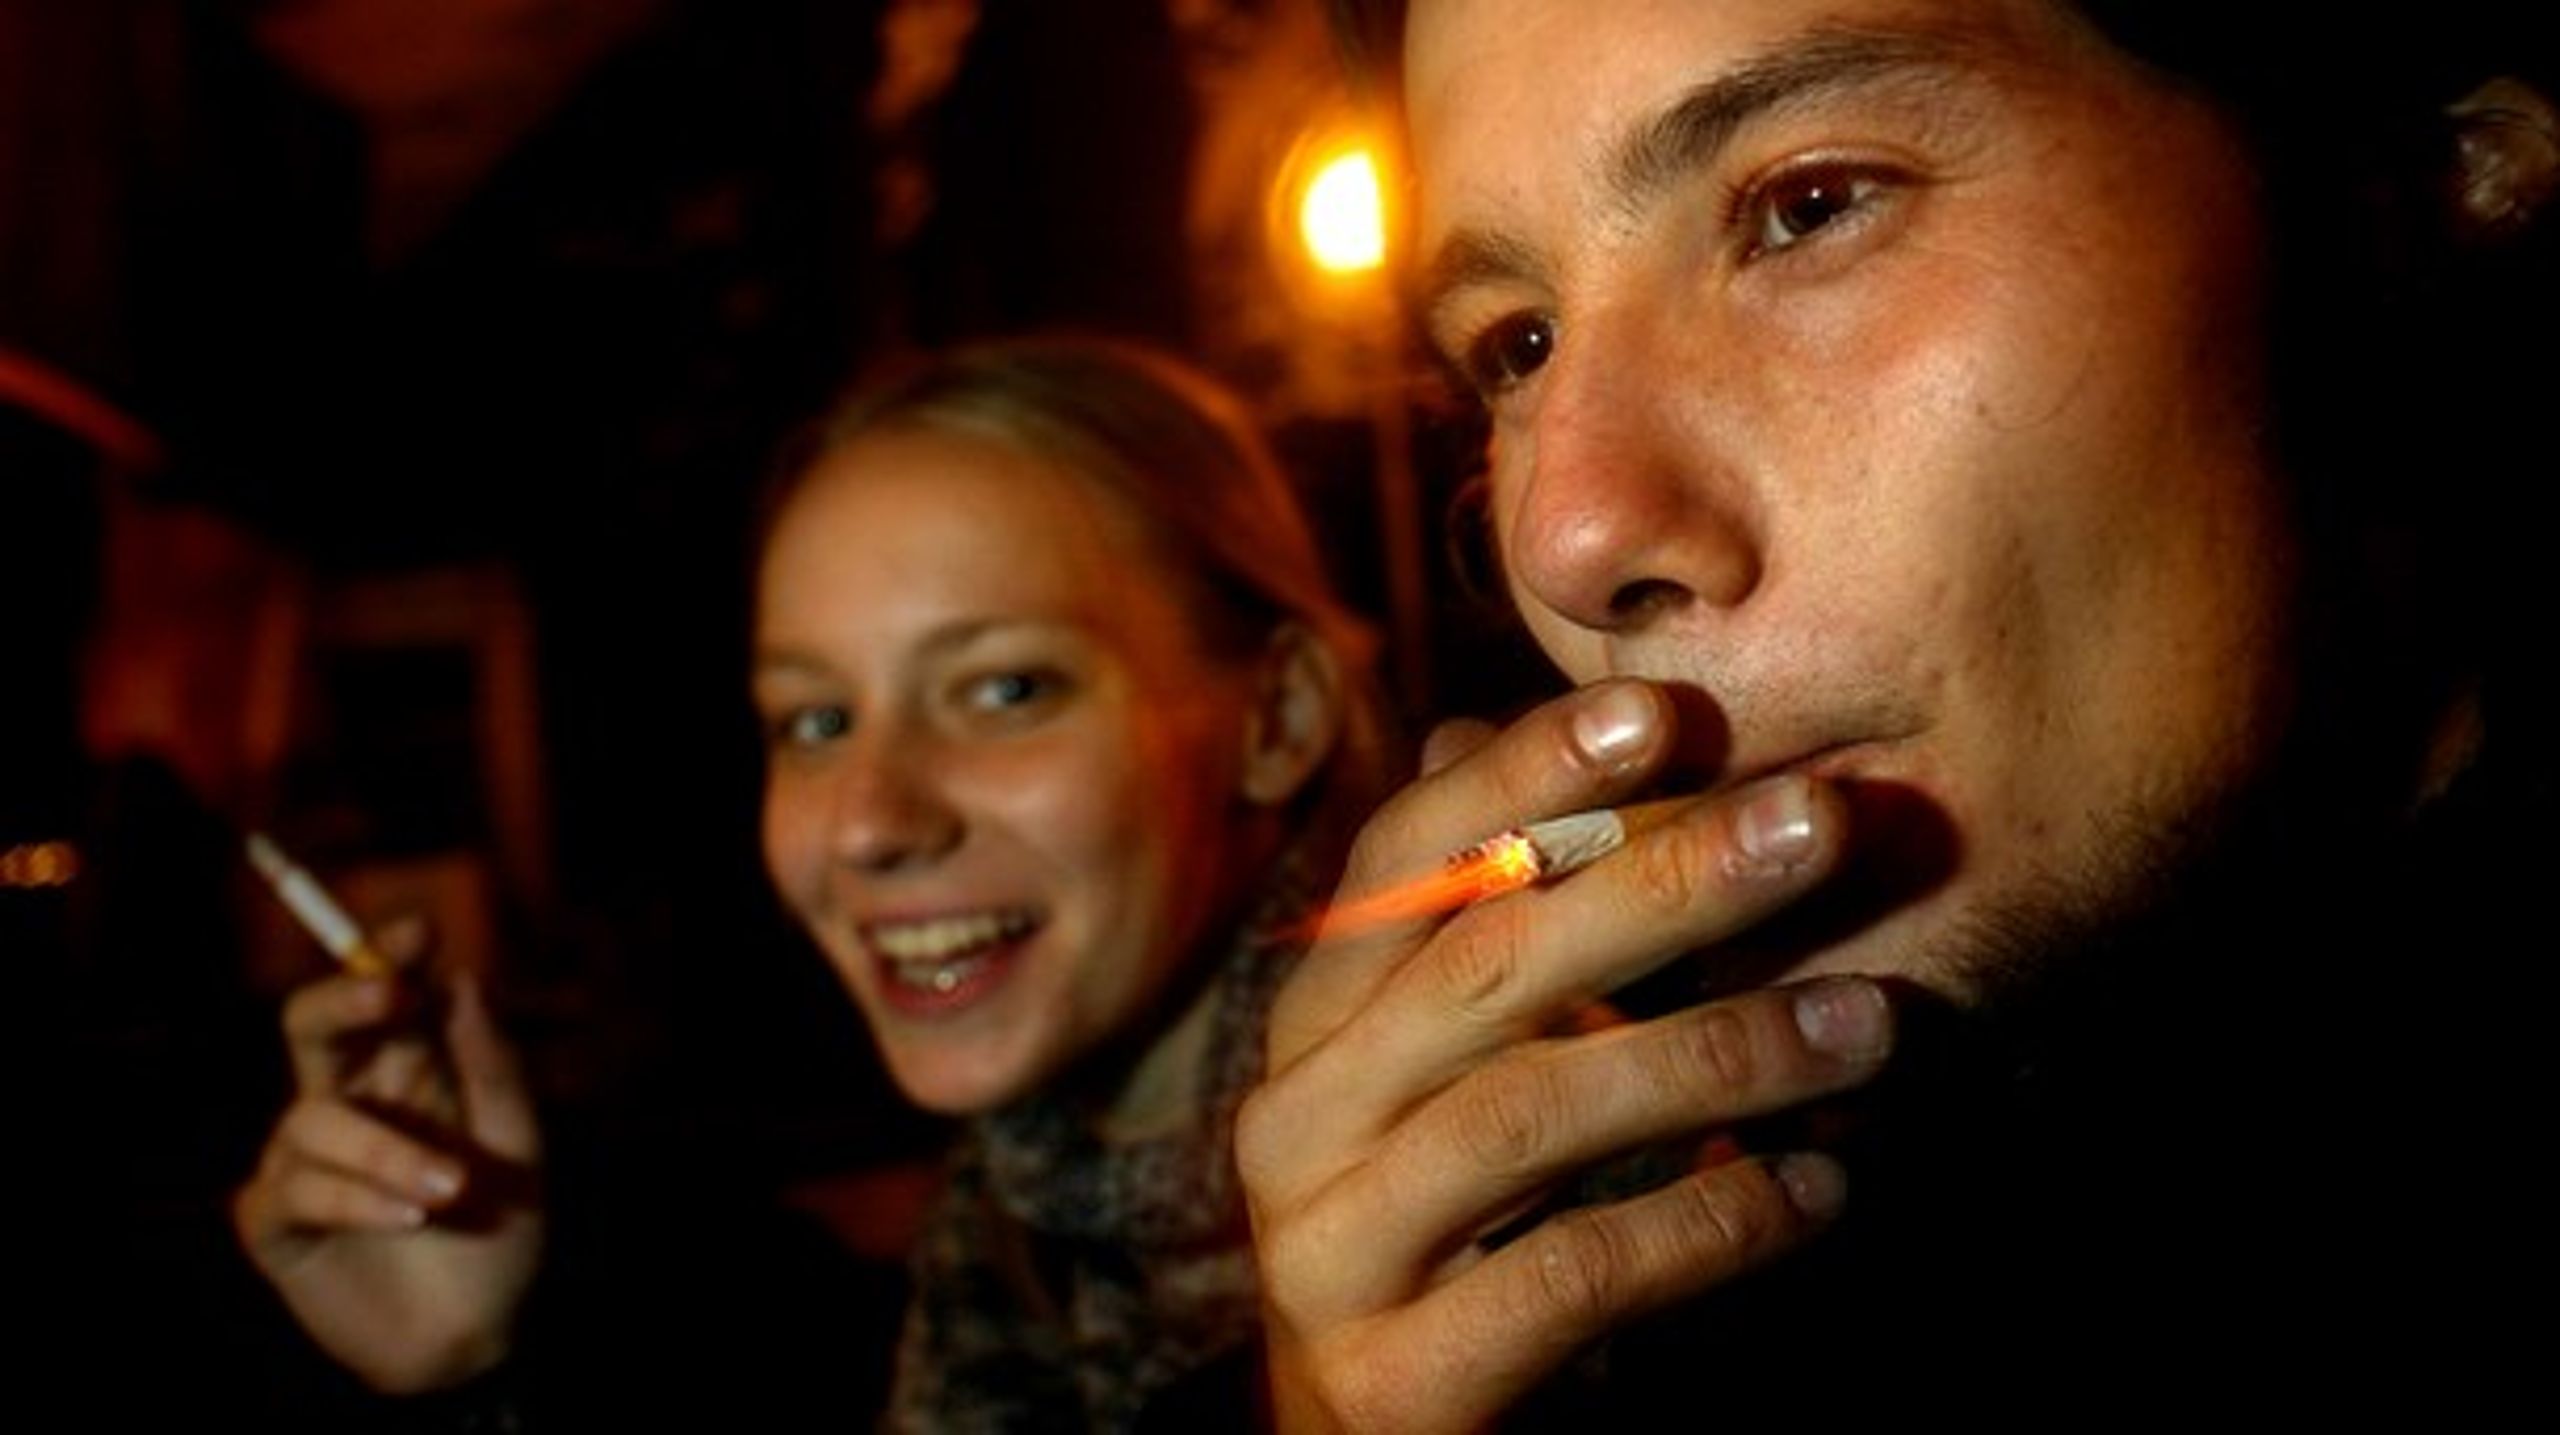 Hver
eneste dag begynder 40 unge under 18 år at ryge.&nbsp;Priserne skal hæves, så færre unge starter med at ryge,&nbsp;skriver Morten Grønbæk. (Arkivfoto).&nbsp;